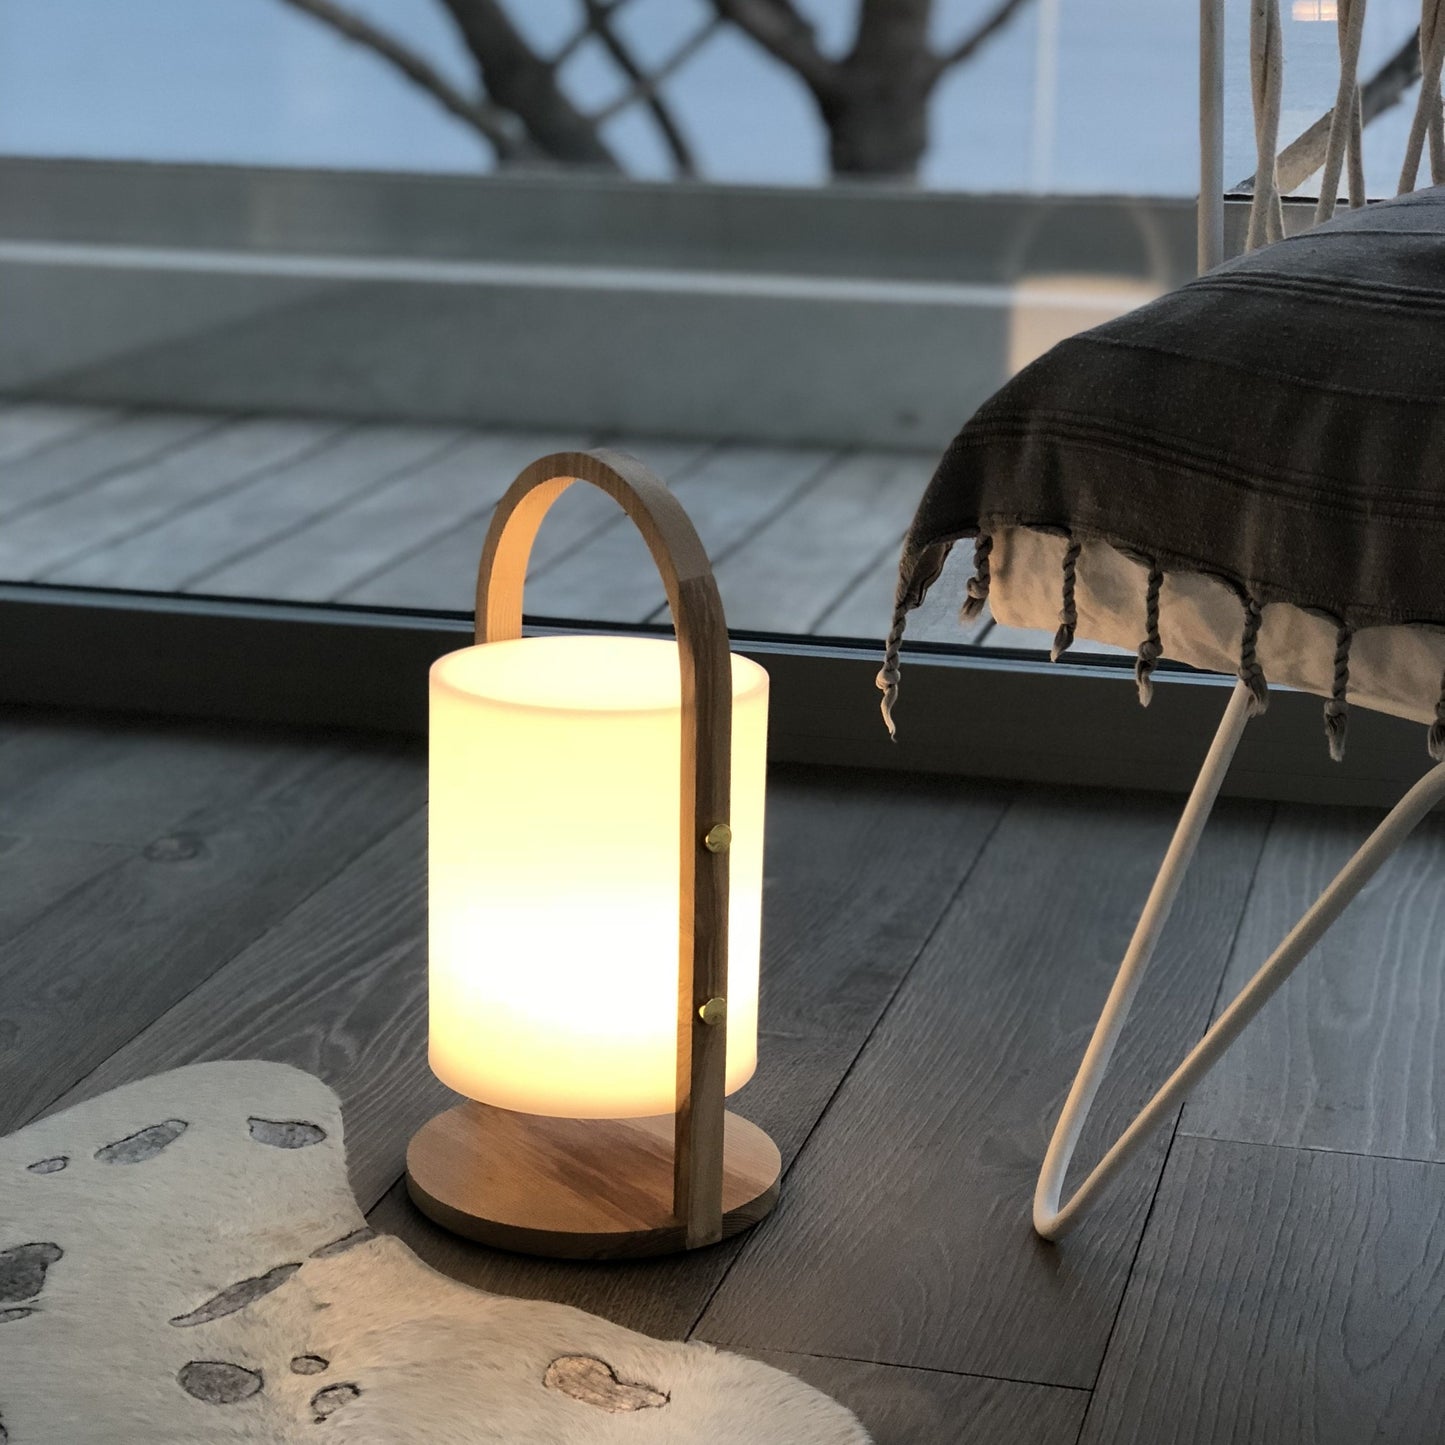 Lanterne sans fil design scandinave poignée bois naturel LED blanc chaud/blanc dimmable WOODY H37cm